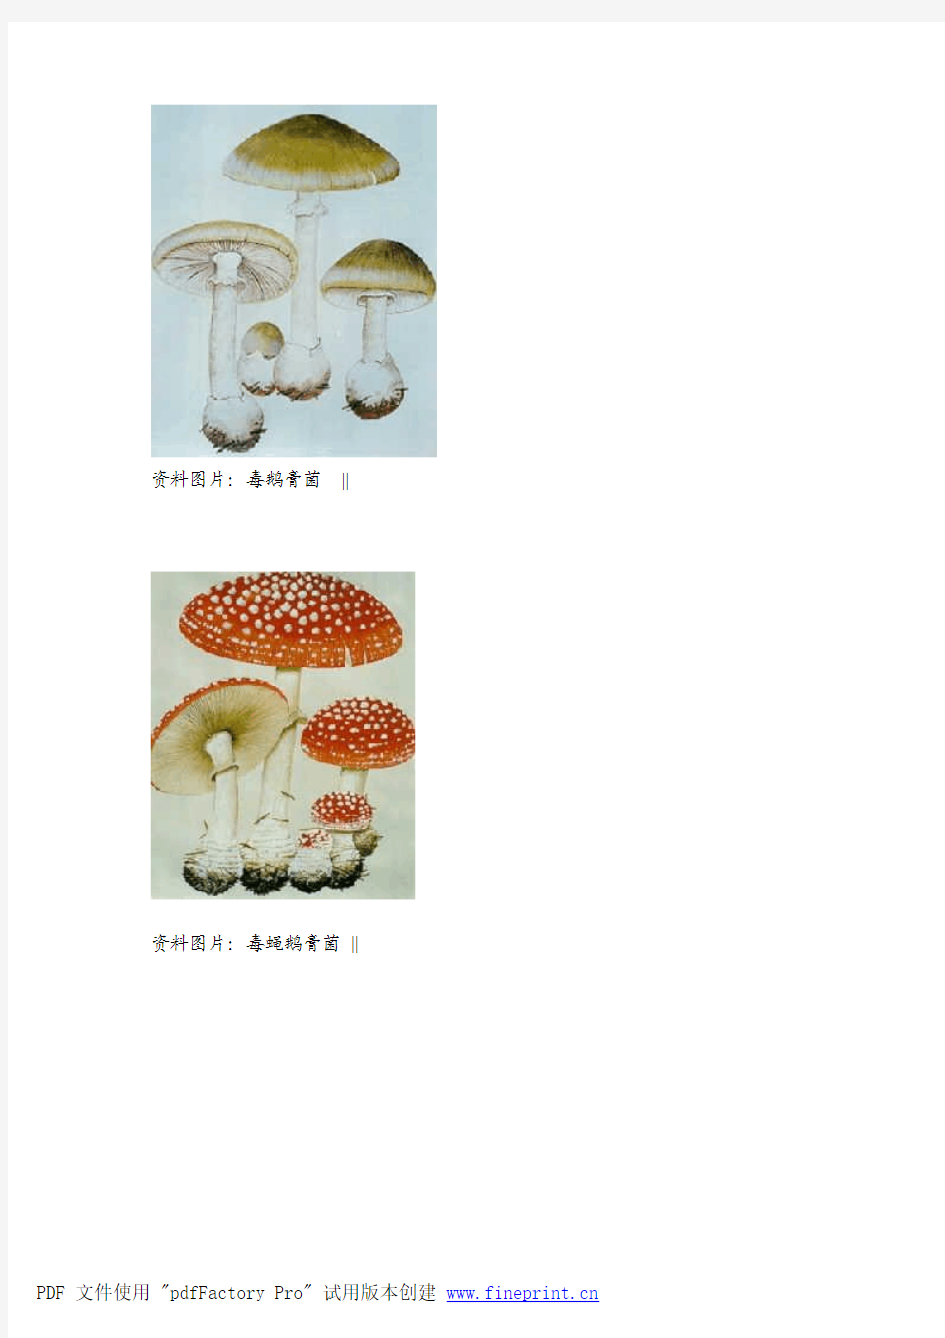 教你辨识17种毒蘑菇(附图)